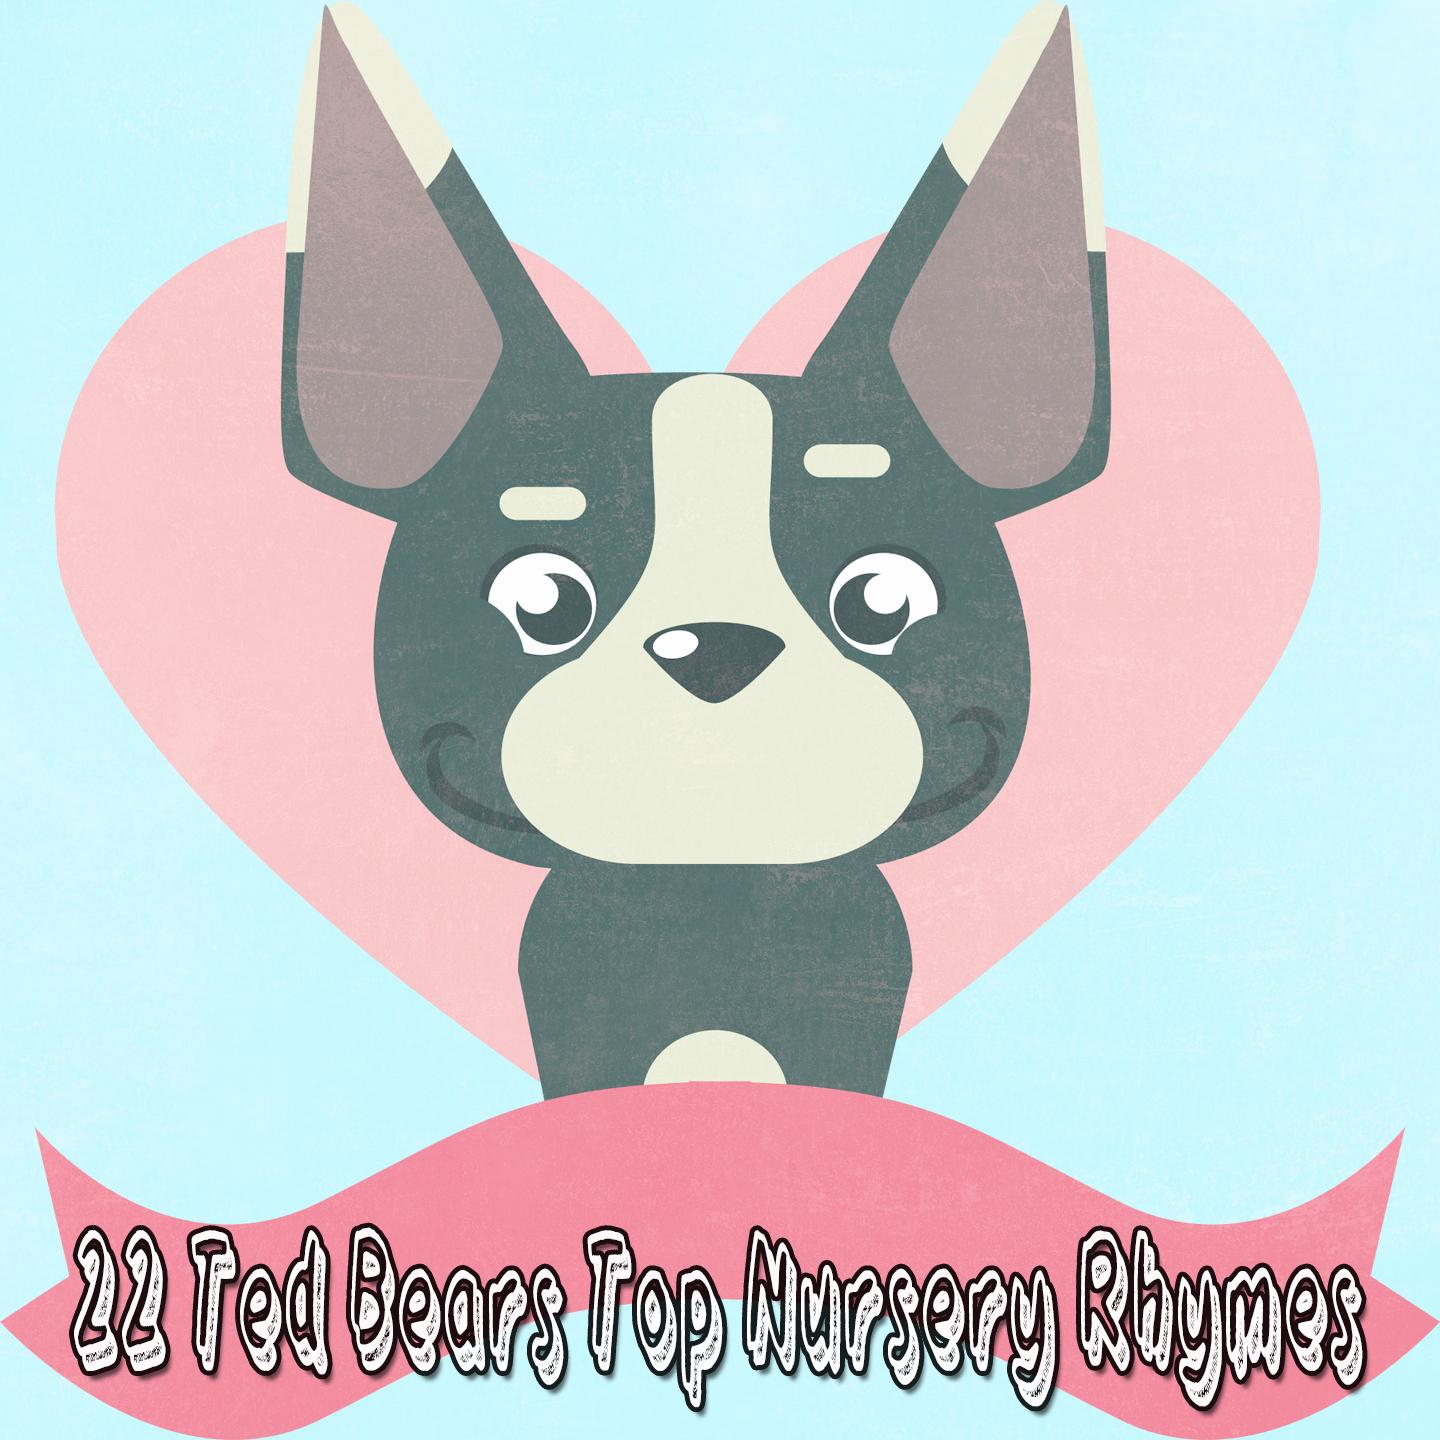 22 Ted Bears Top Nursery Rhymes